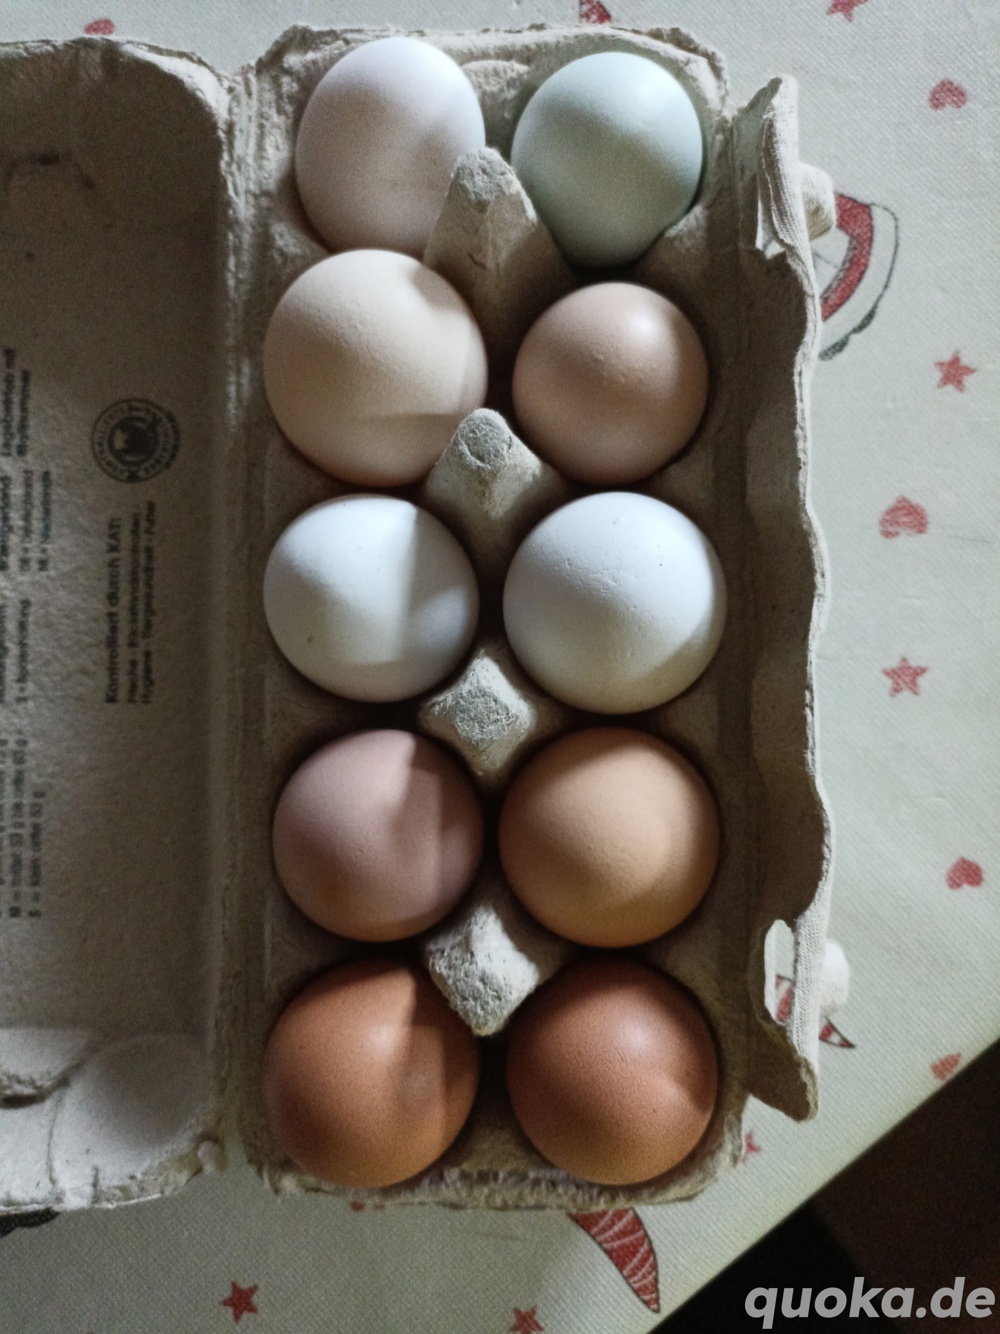 Eier vom Bauernhof 